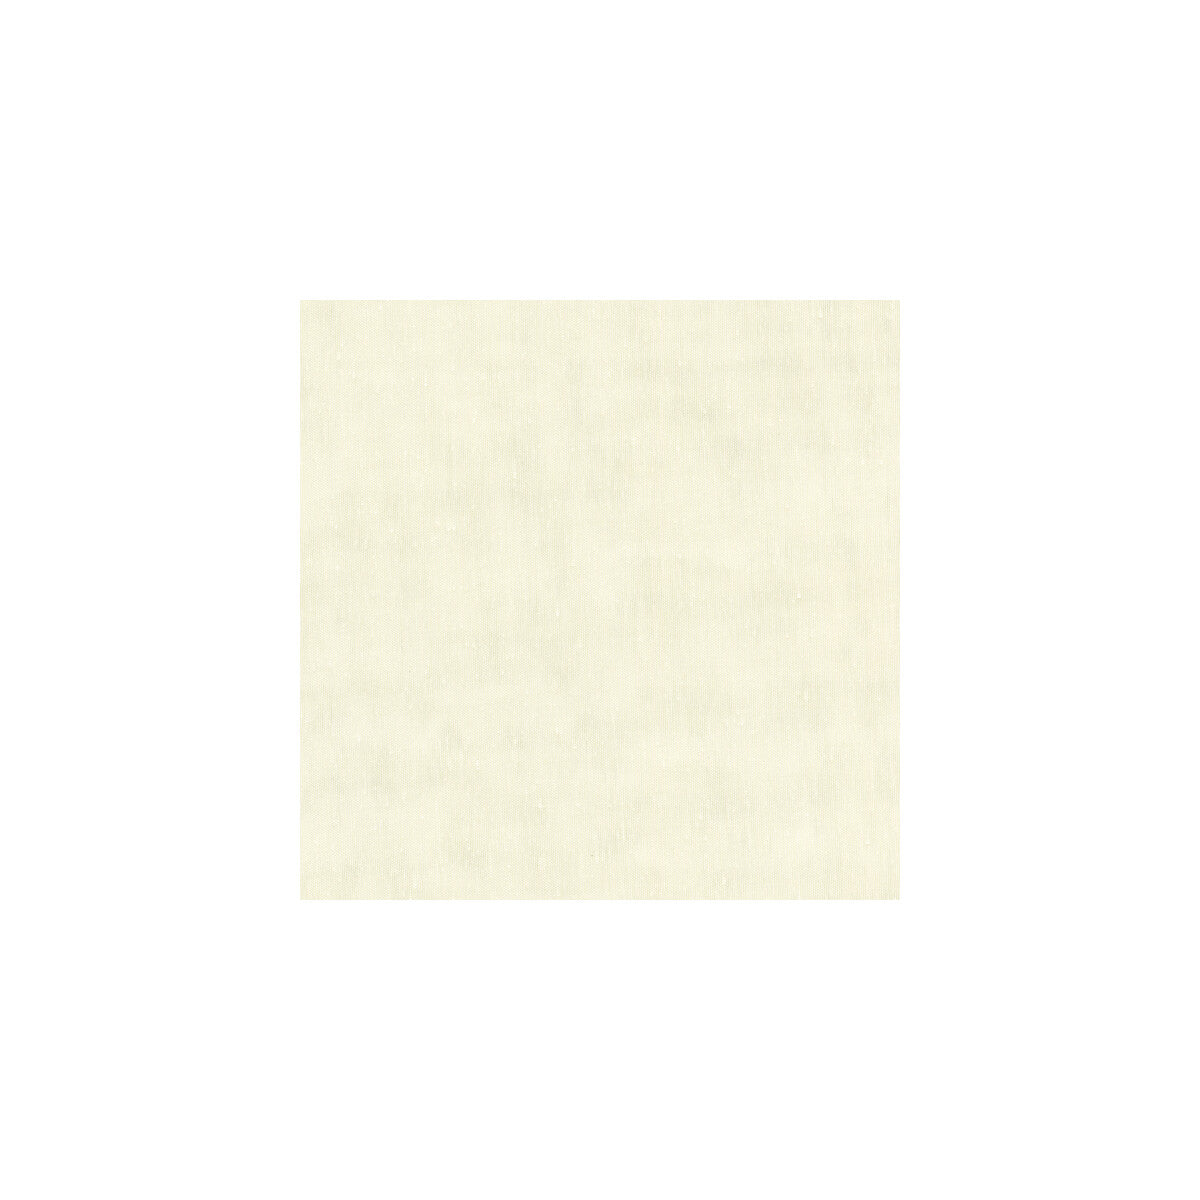 Kravet Basics fabric in 8790-100 color - pattern 8790.100.0 - by Kravet Basics